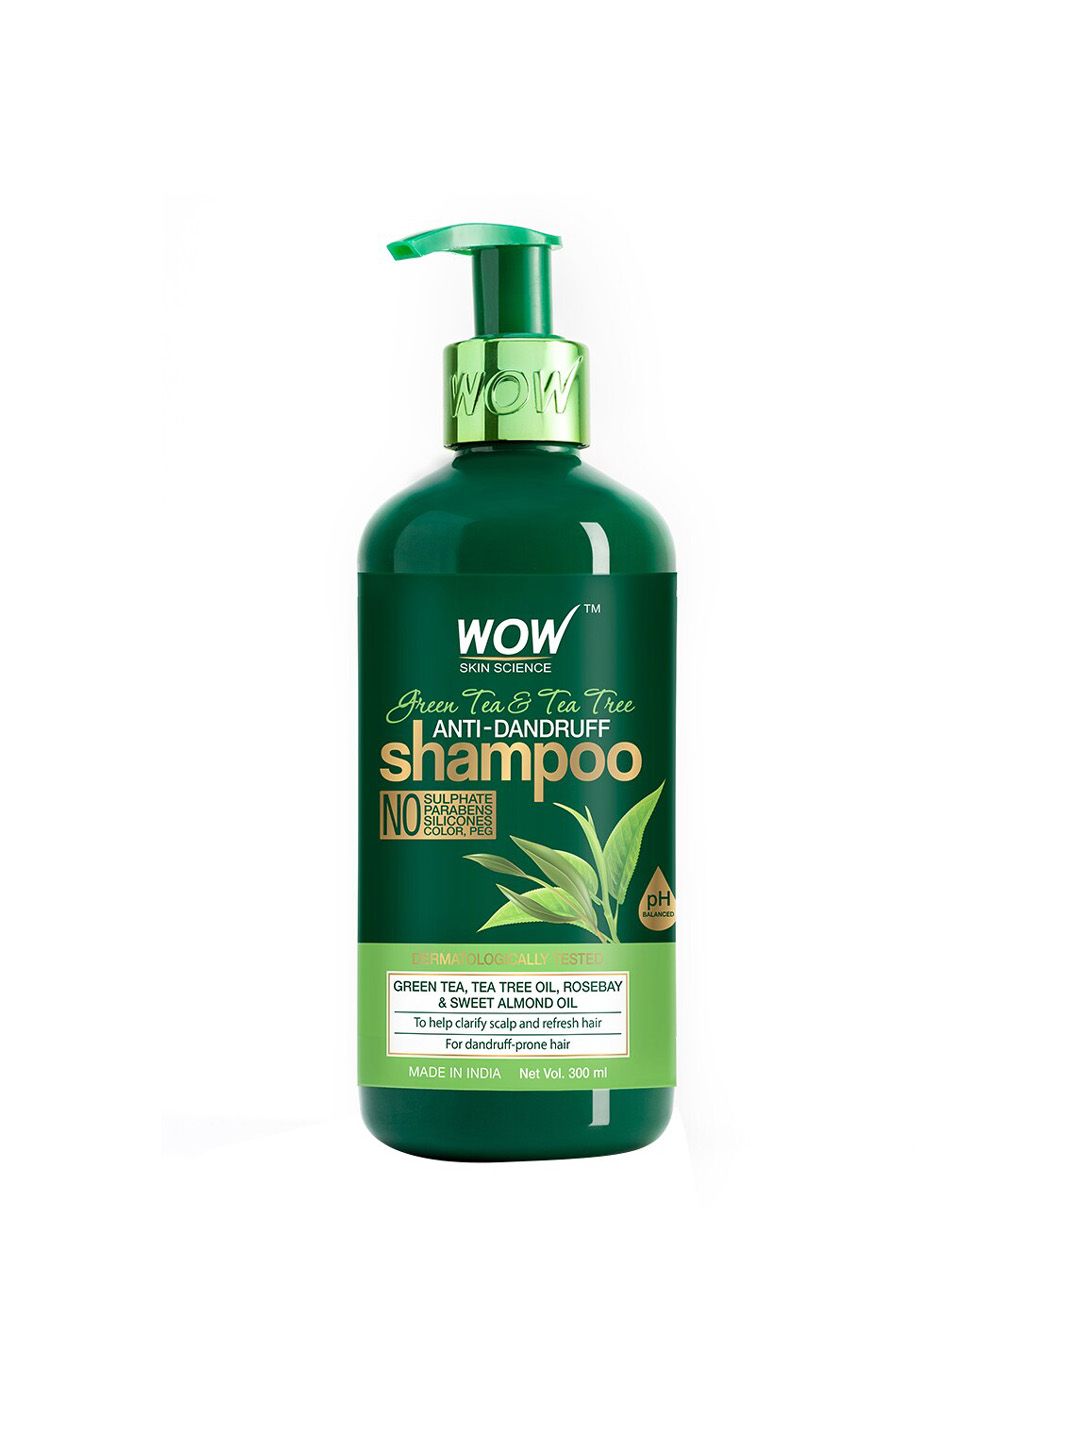 WOW Skin Science Green Tea & Tea Tree Anti-Dandruff Shampoo with Almond Oil 300 ml Price in India